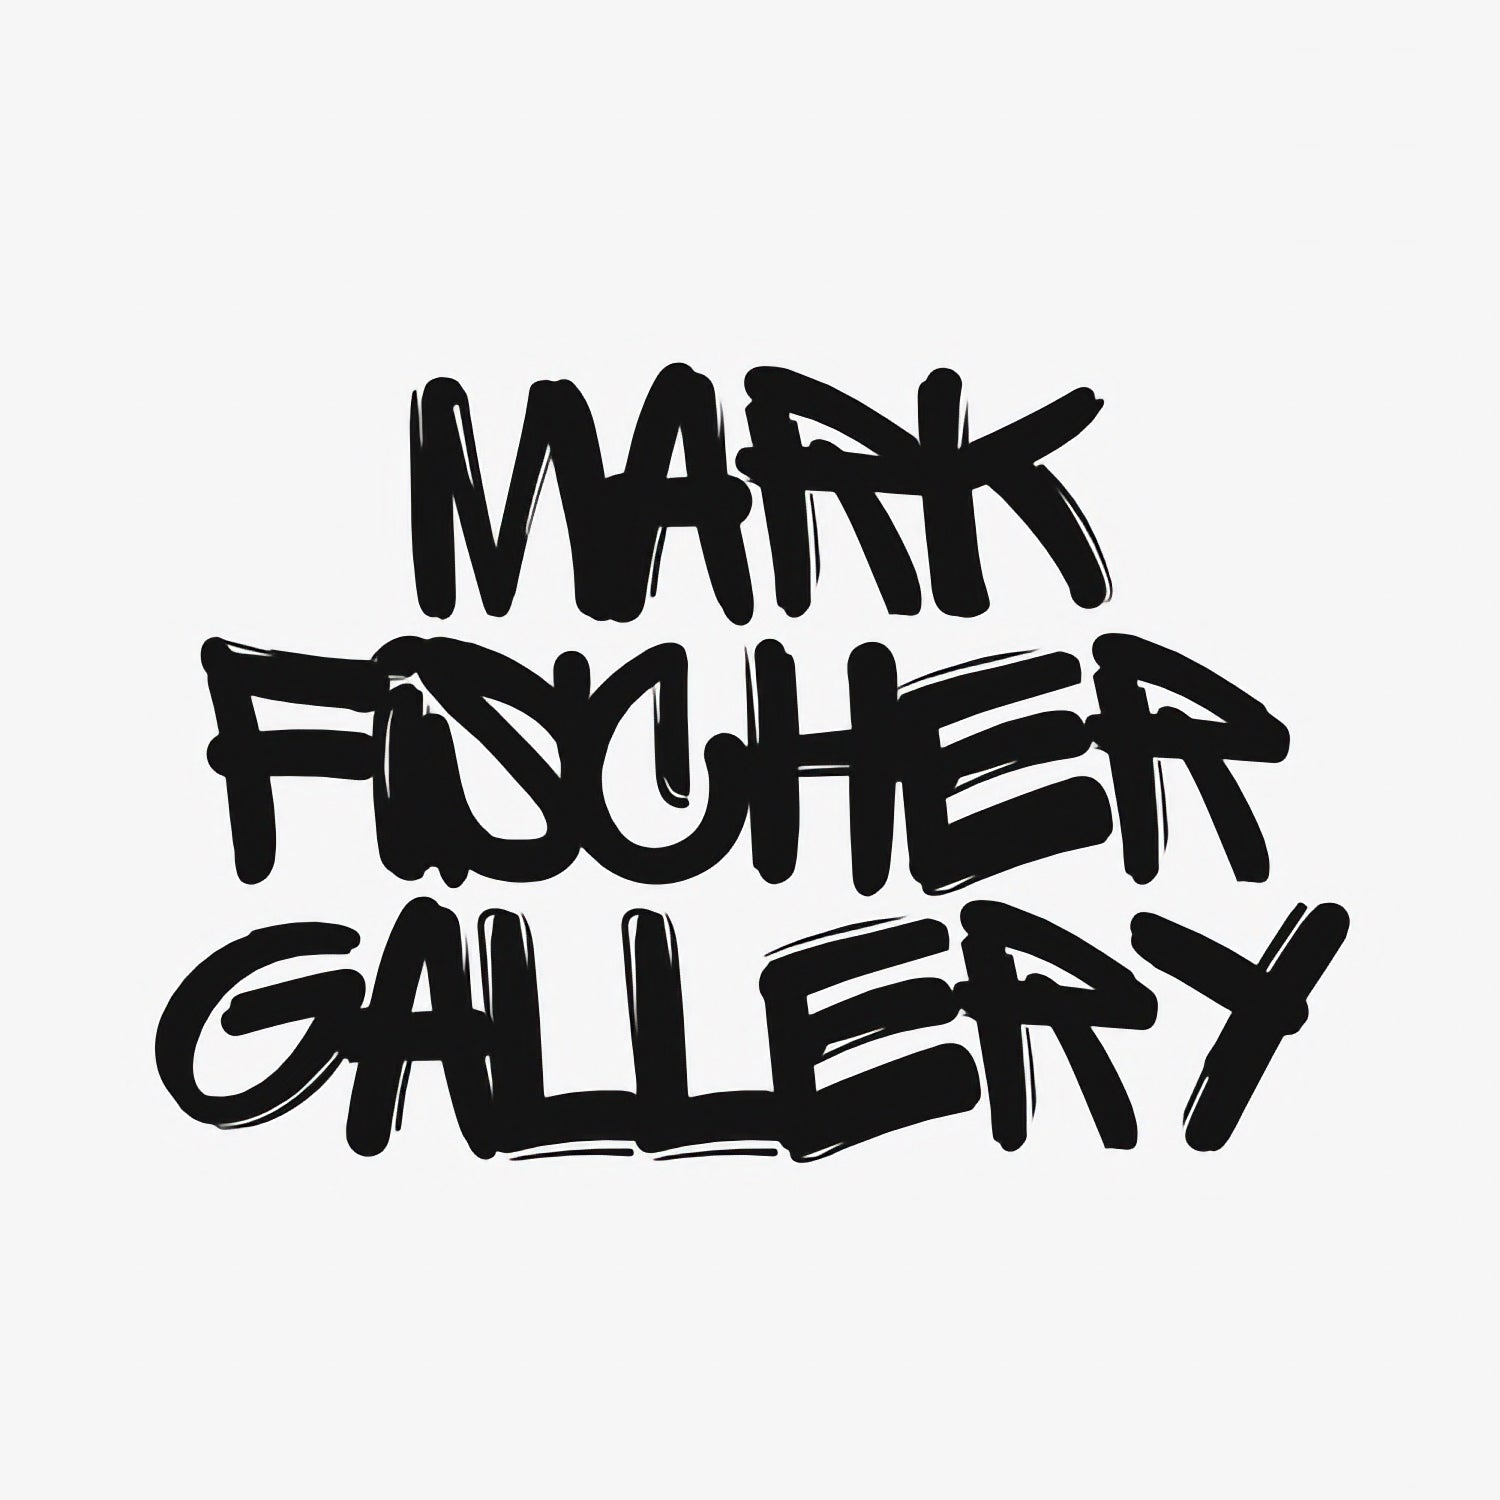 (c) Mark-fischer-gallery.com